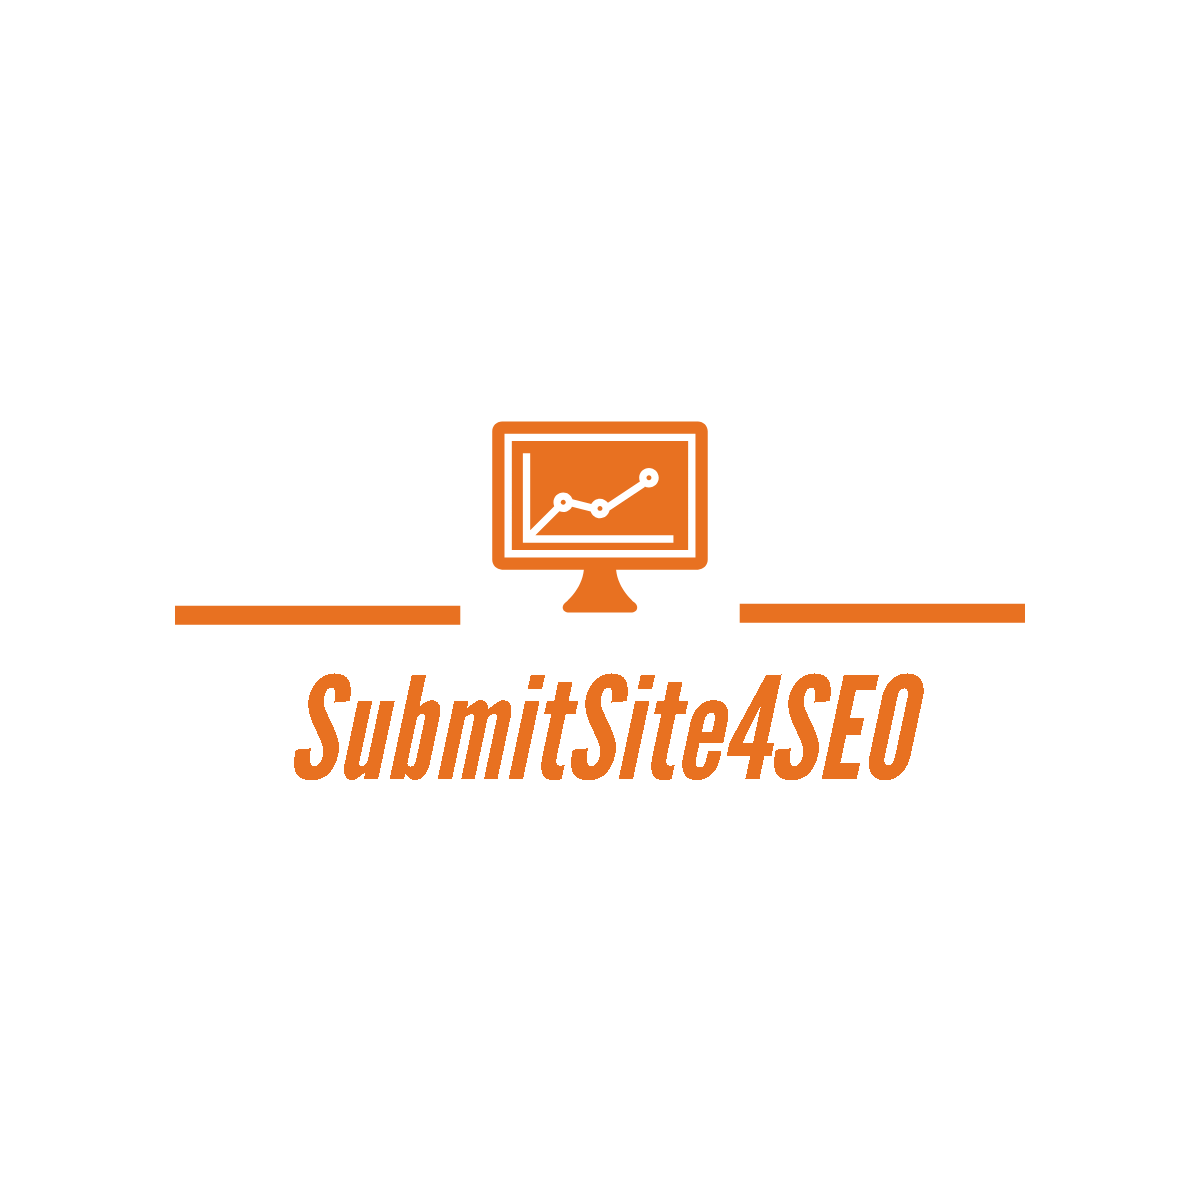 Submit Site 4 SEO Logo